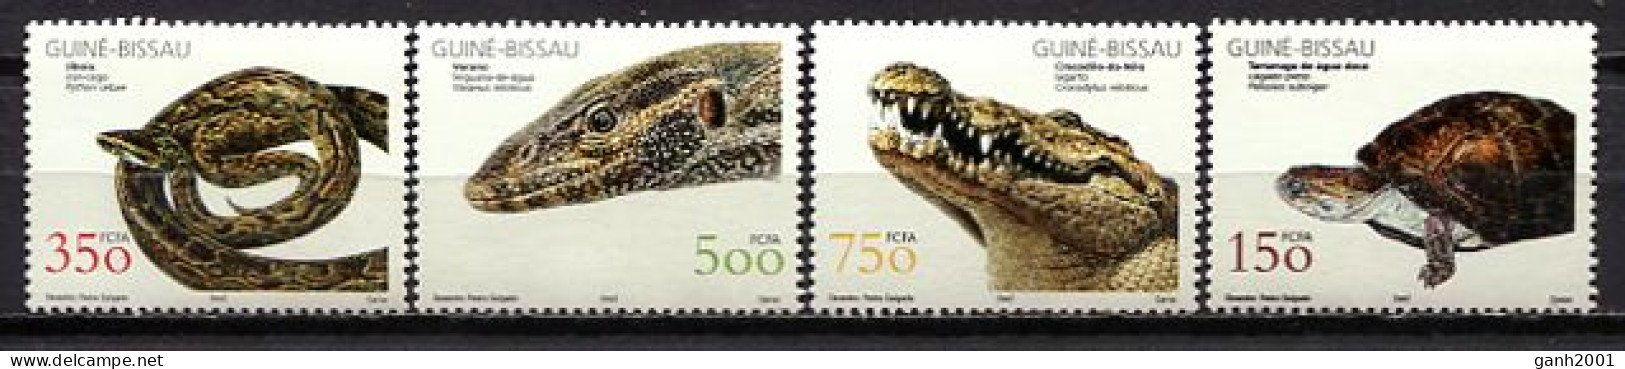 Guinea Bissau 2002 / Reptiles Snakes Turtles MNH Tortugas Serpientes Schlangen Schildkröte / Cu0231  33-42 - Serpenti